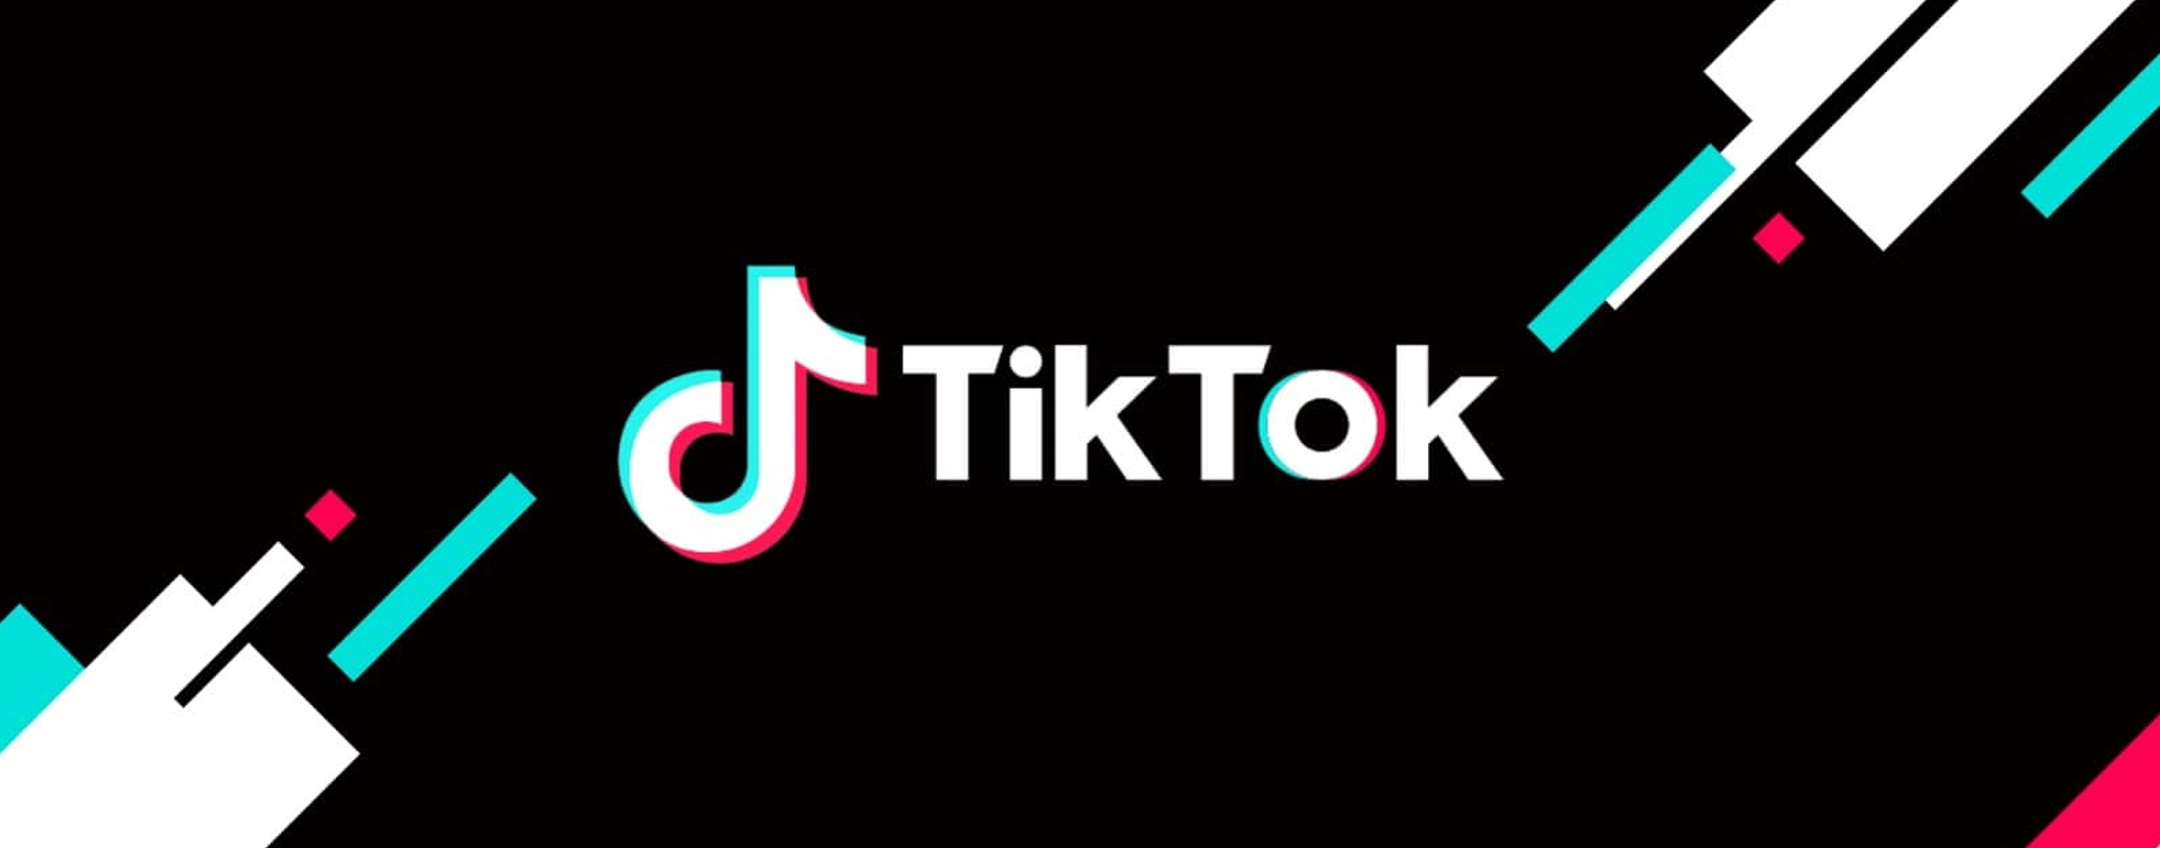 TikTok, scacco matto a Youtube: annunciata la funzionalità killer